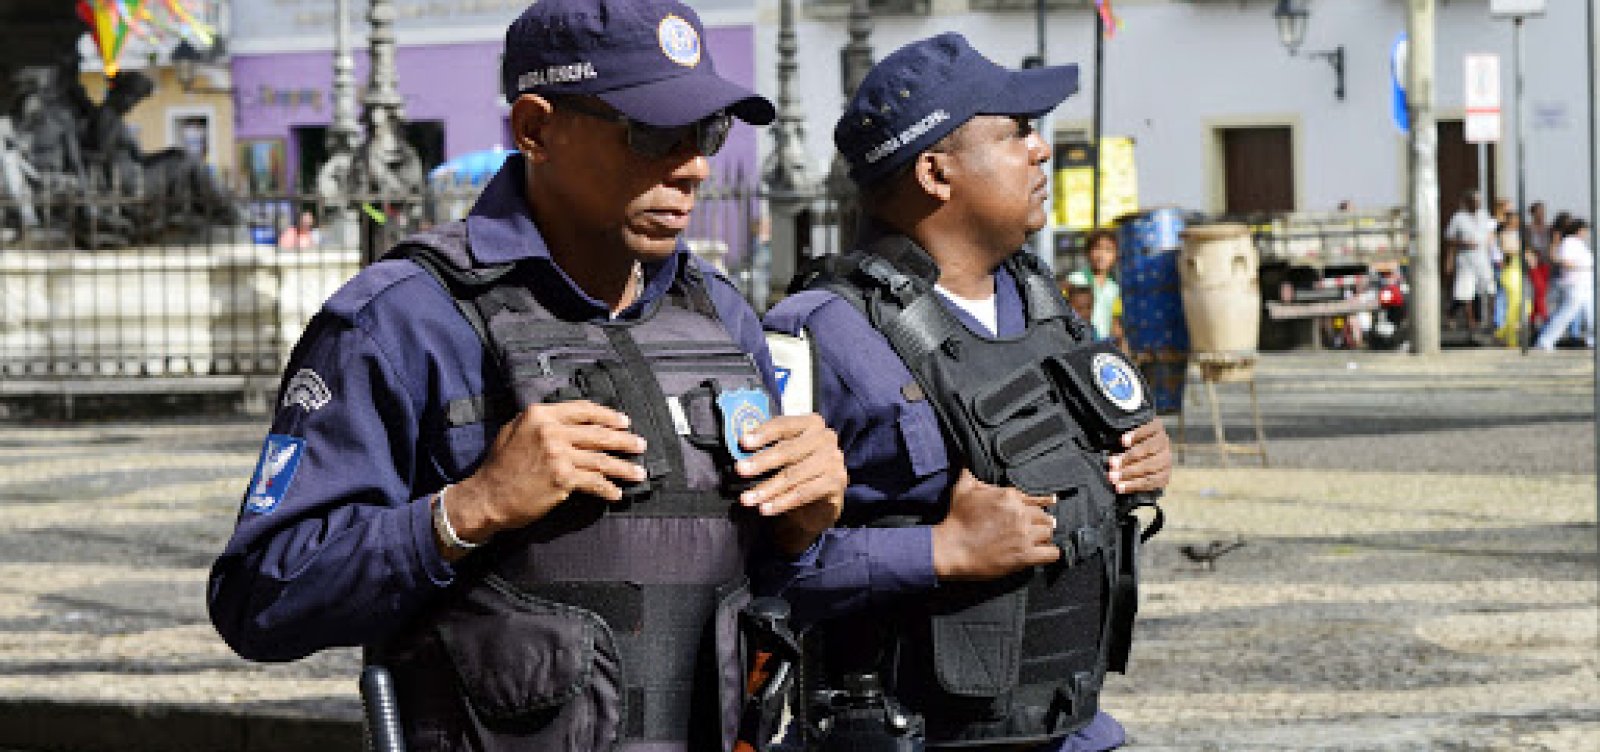 PRF doa 200 pistolas Taurus e 20 mil munições para Guarda Municipal de Salvador